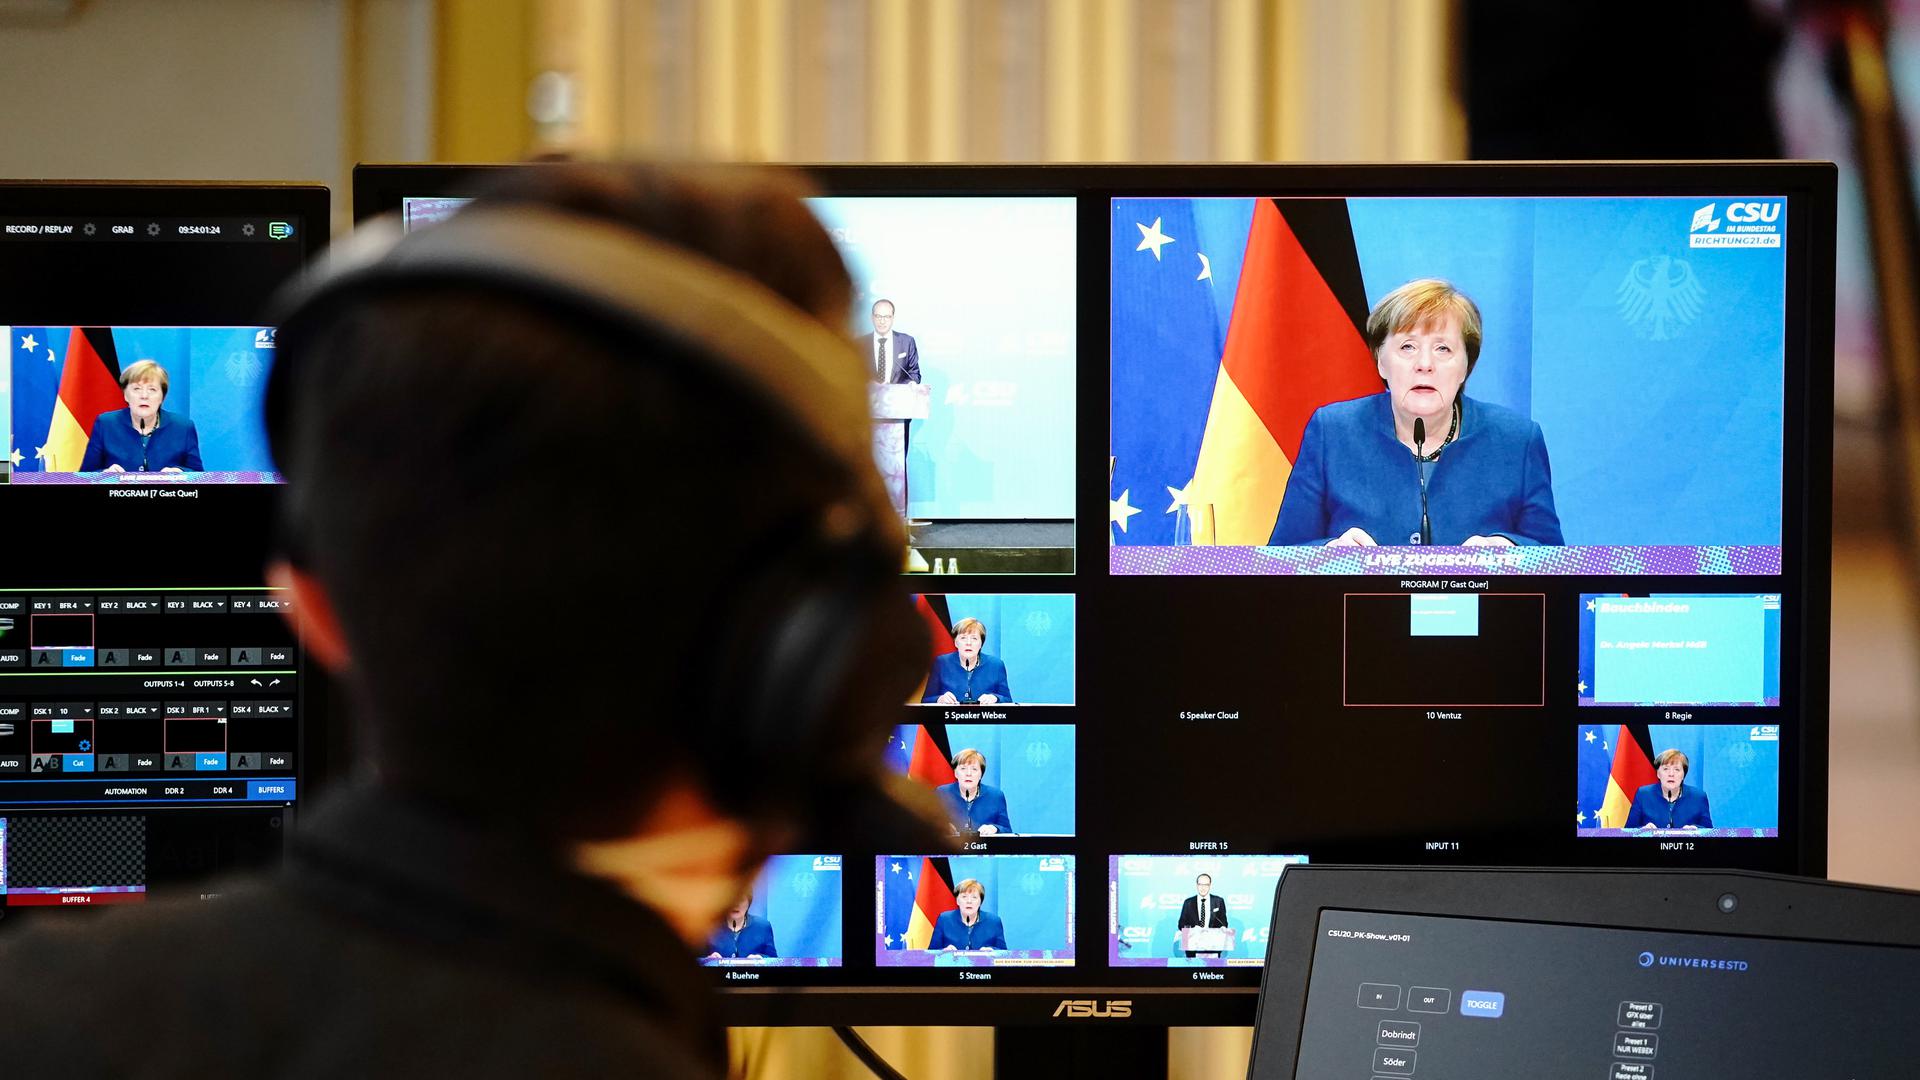 Bundeskanzlerin Angela Merkel (CDU) gibt zu Beginn der digitalen Pressekonferenz bei der Winterklausur der CSU-Landesgruppe im Bundestag ein Statement zu den Ereignissen in Washington mit dem Sturm von Trump-Anhängern auf das Kapitol ab.